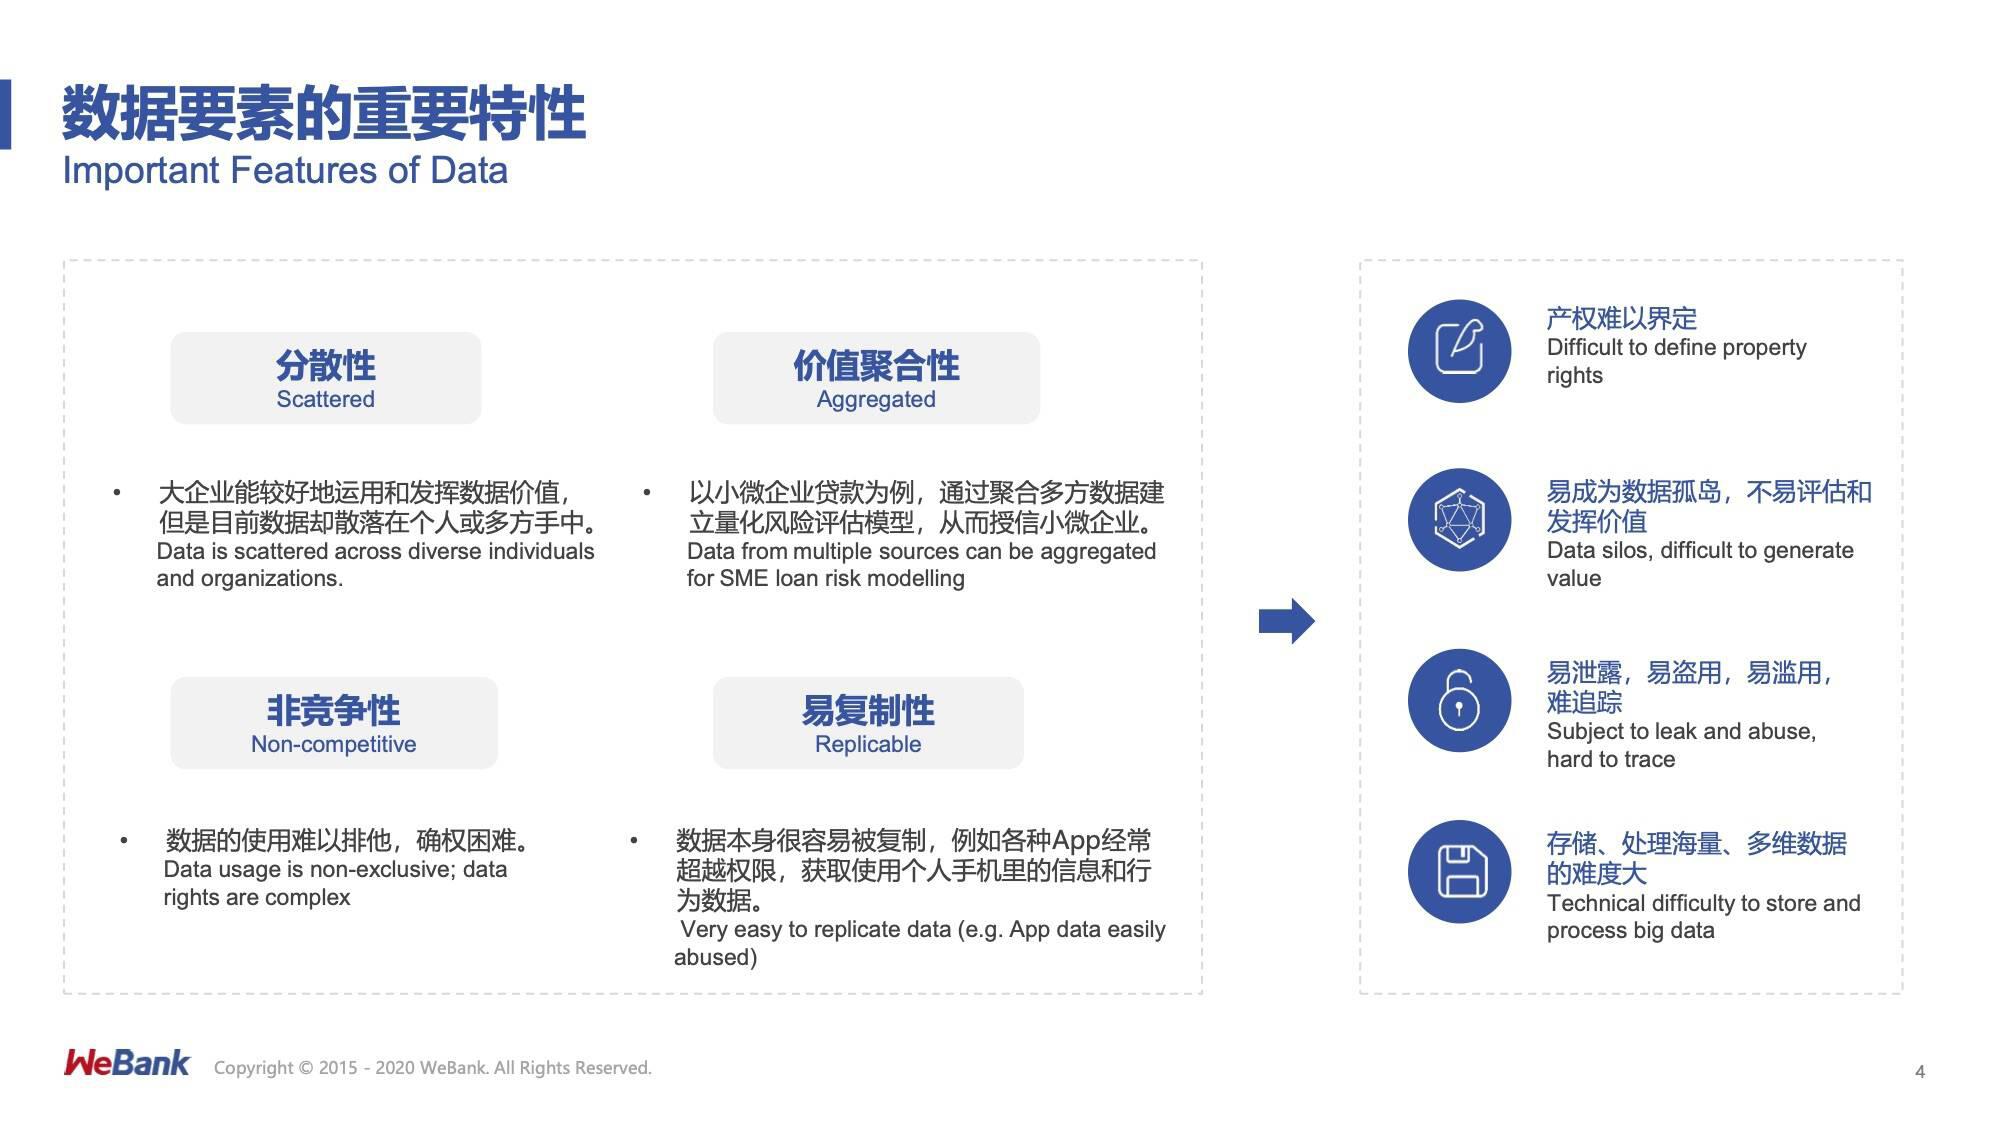 马智涛：解放数据要素生产力，需解决安全存储、可信传输以及协同生产三大问题